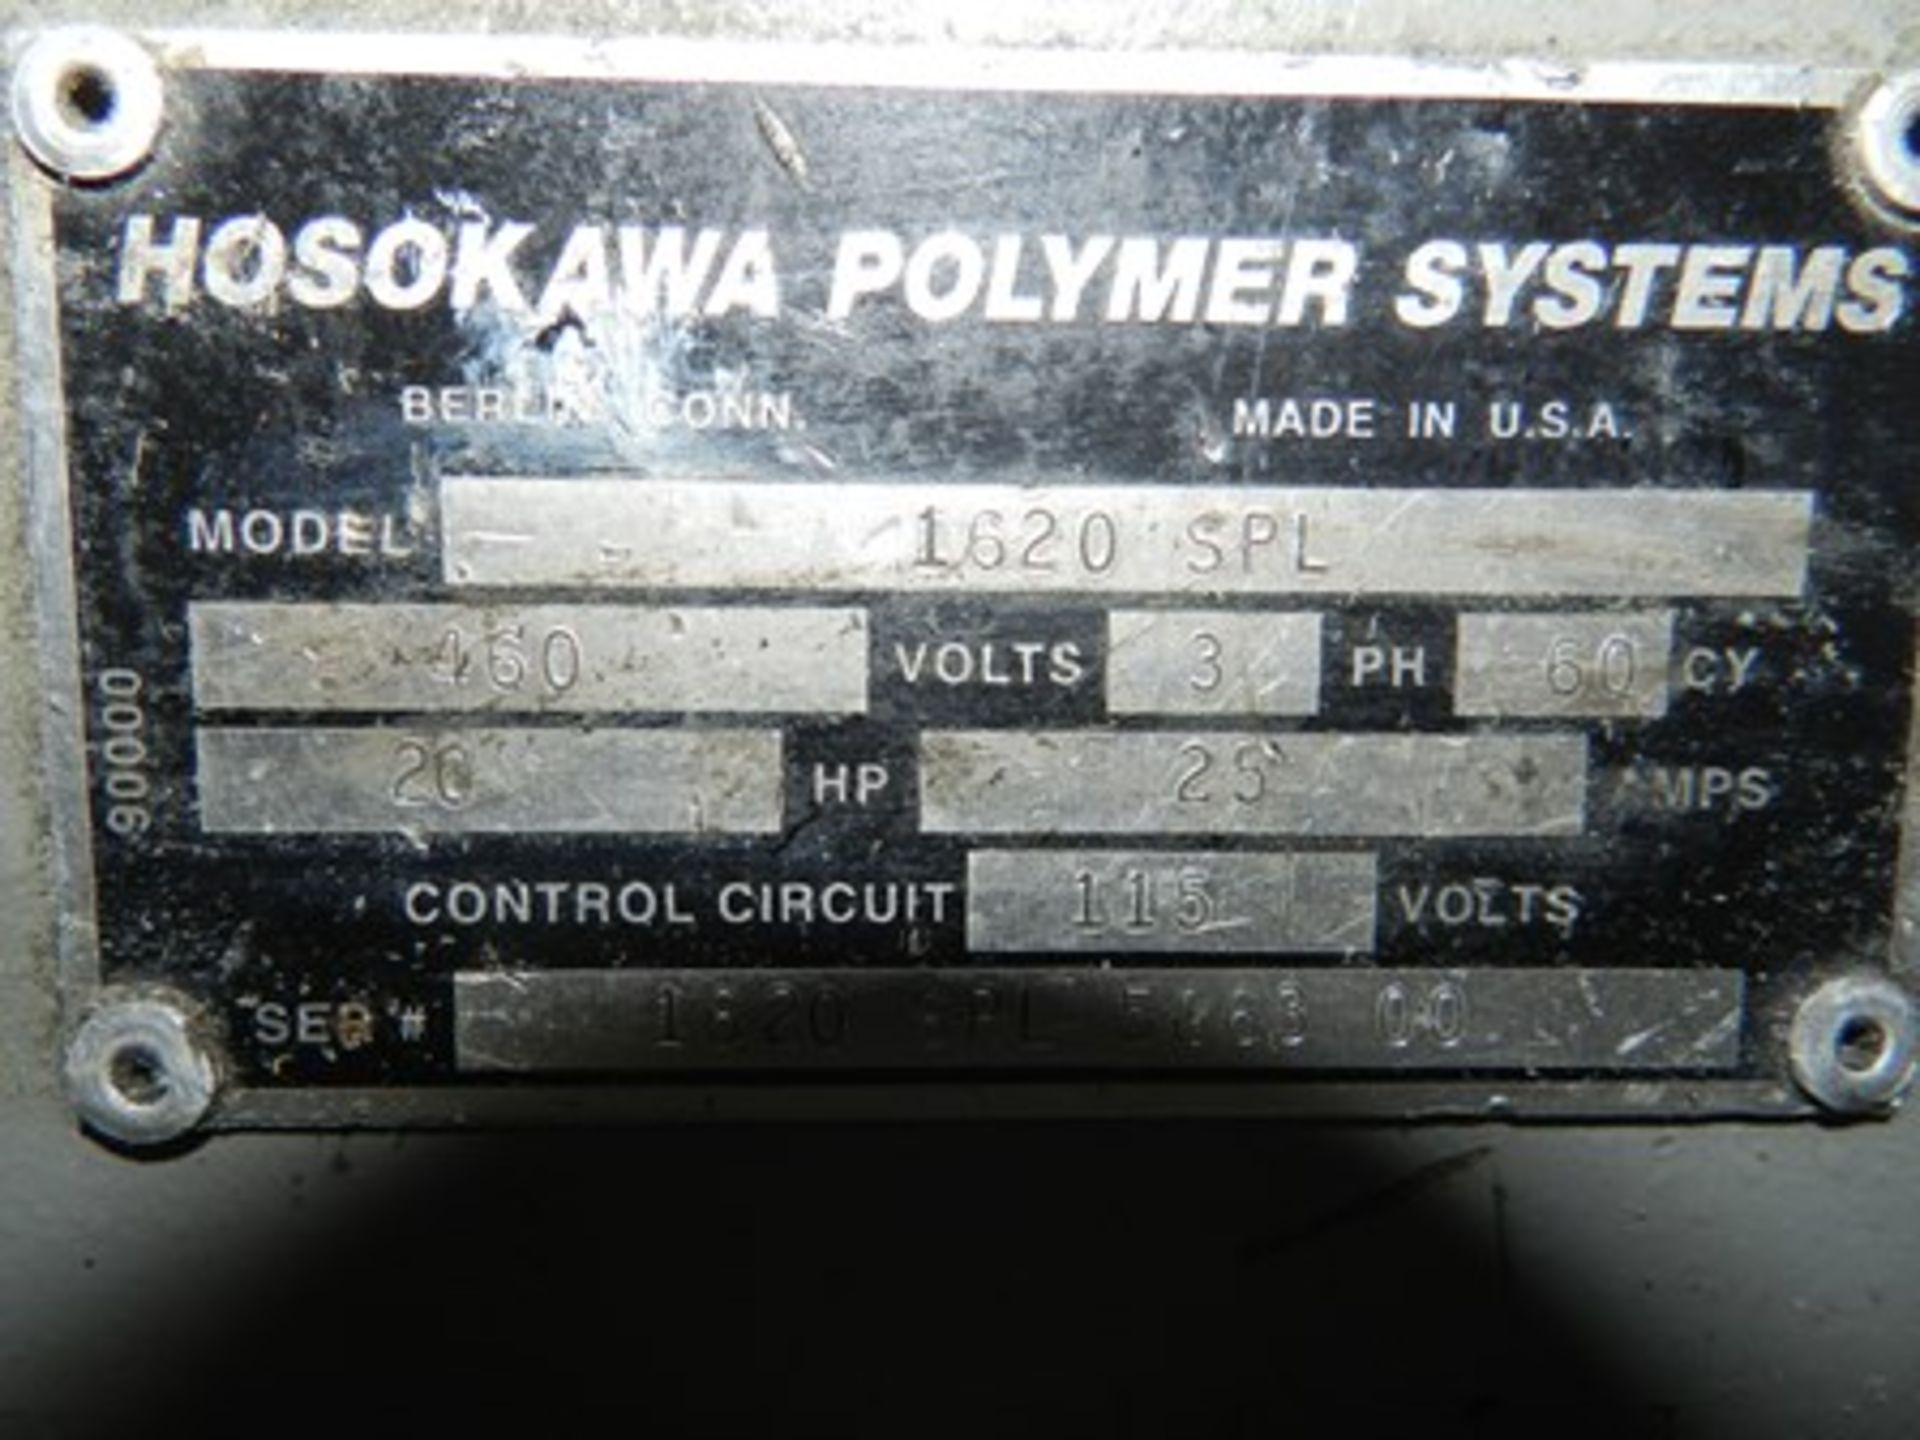 20 HORSEPOWER HOSOKAWA POLYMER SYSTEMS, MODEL 1620SPL SERIE 1620 SPL 586300, BALDOR 460V. ENGINE. - Image 5 of 15